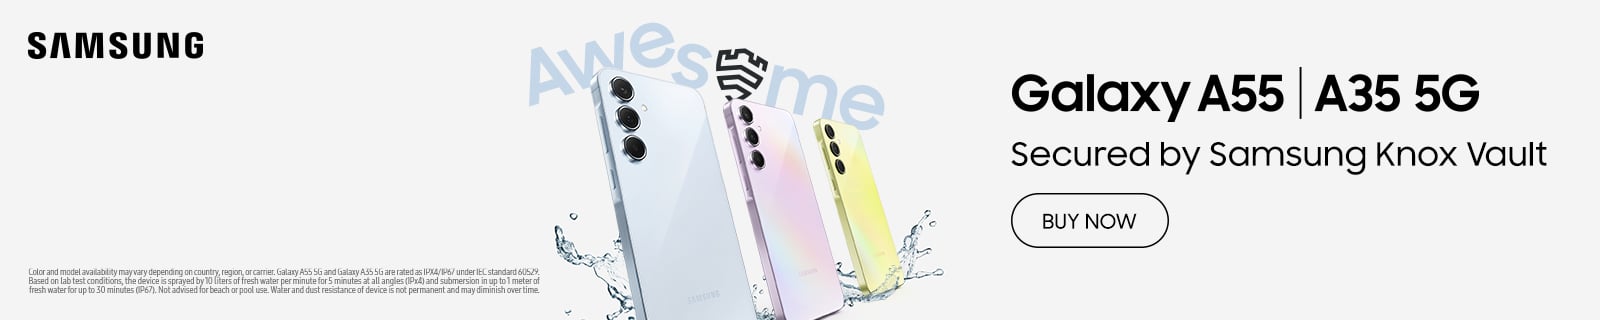 Samsung Galaxy A35 | A55 5G (Web)